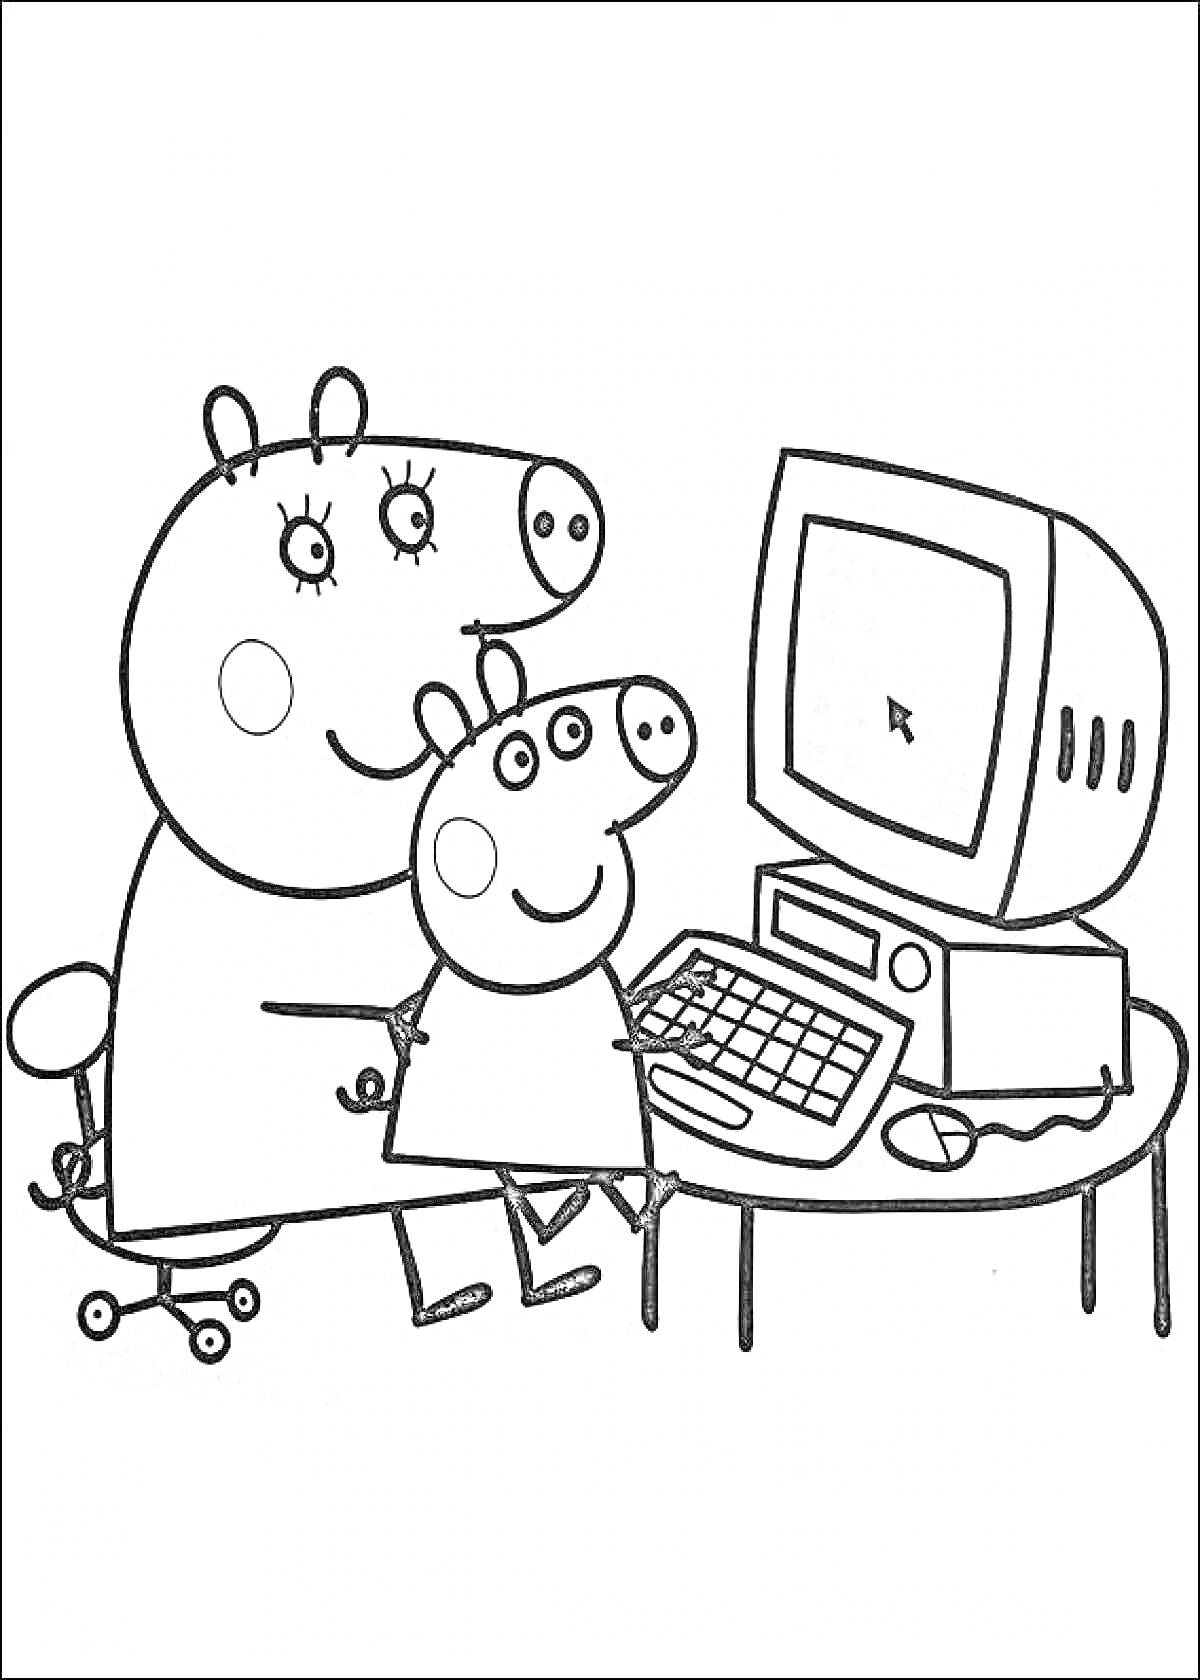 Раскраска Свинка Пеппа и взрослый свин за столом с компьютером